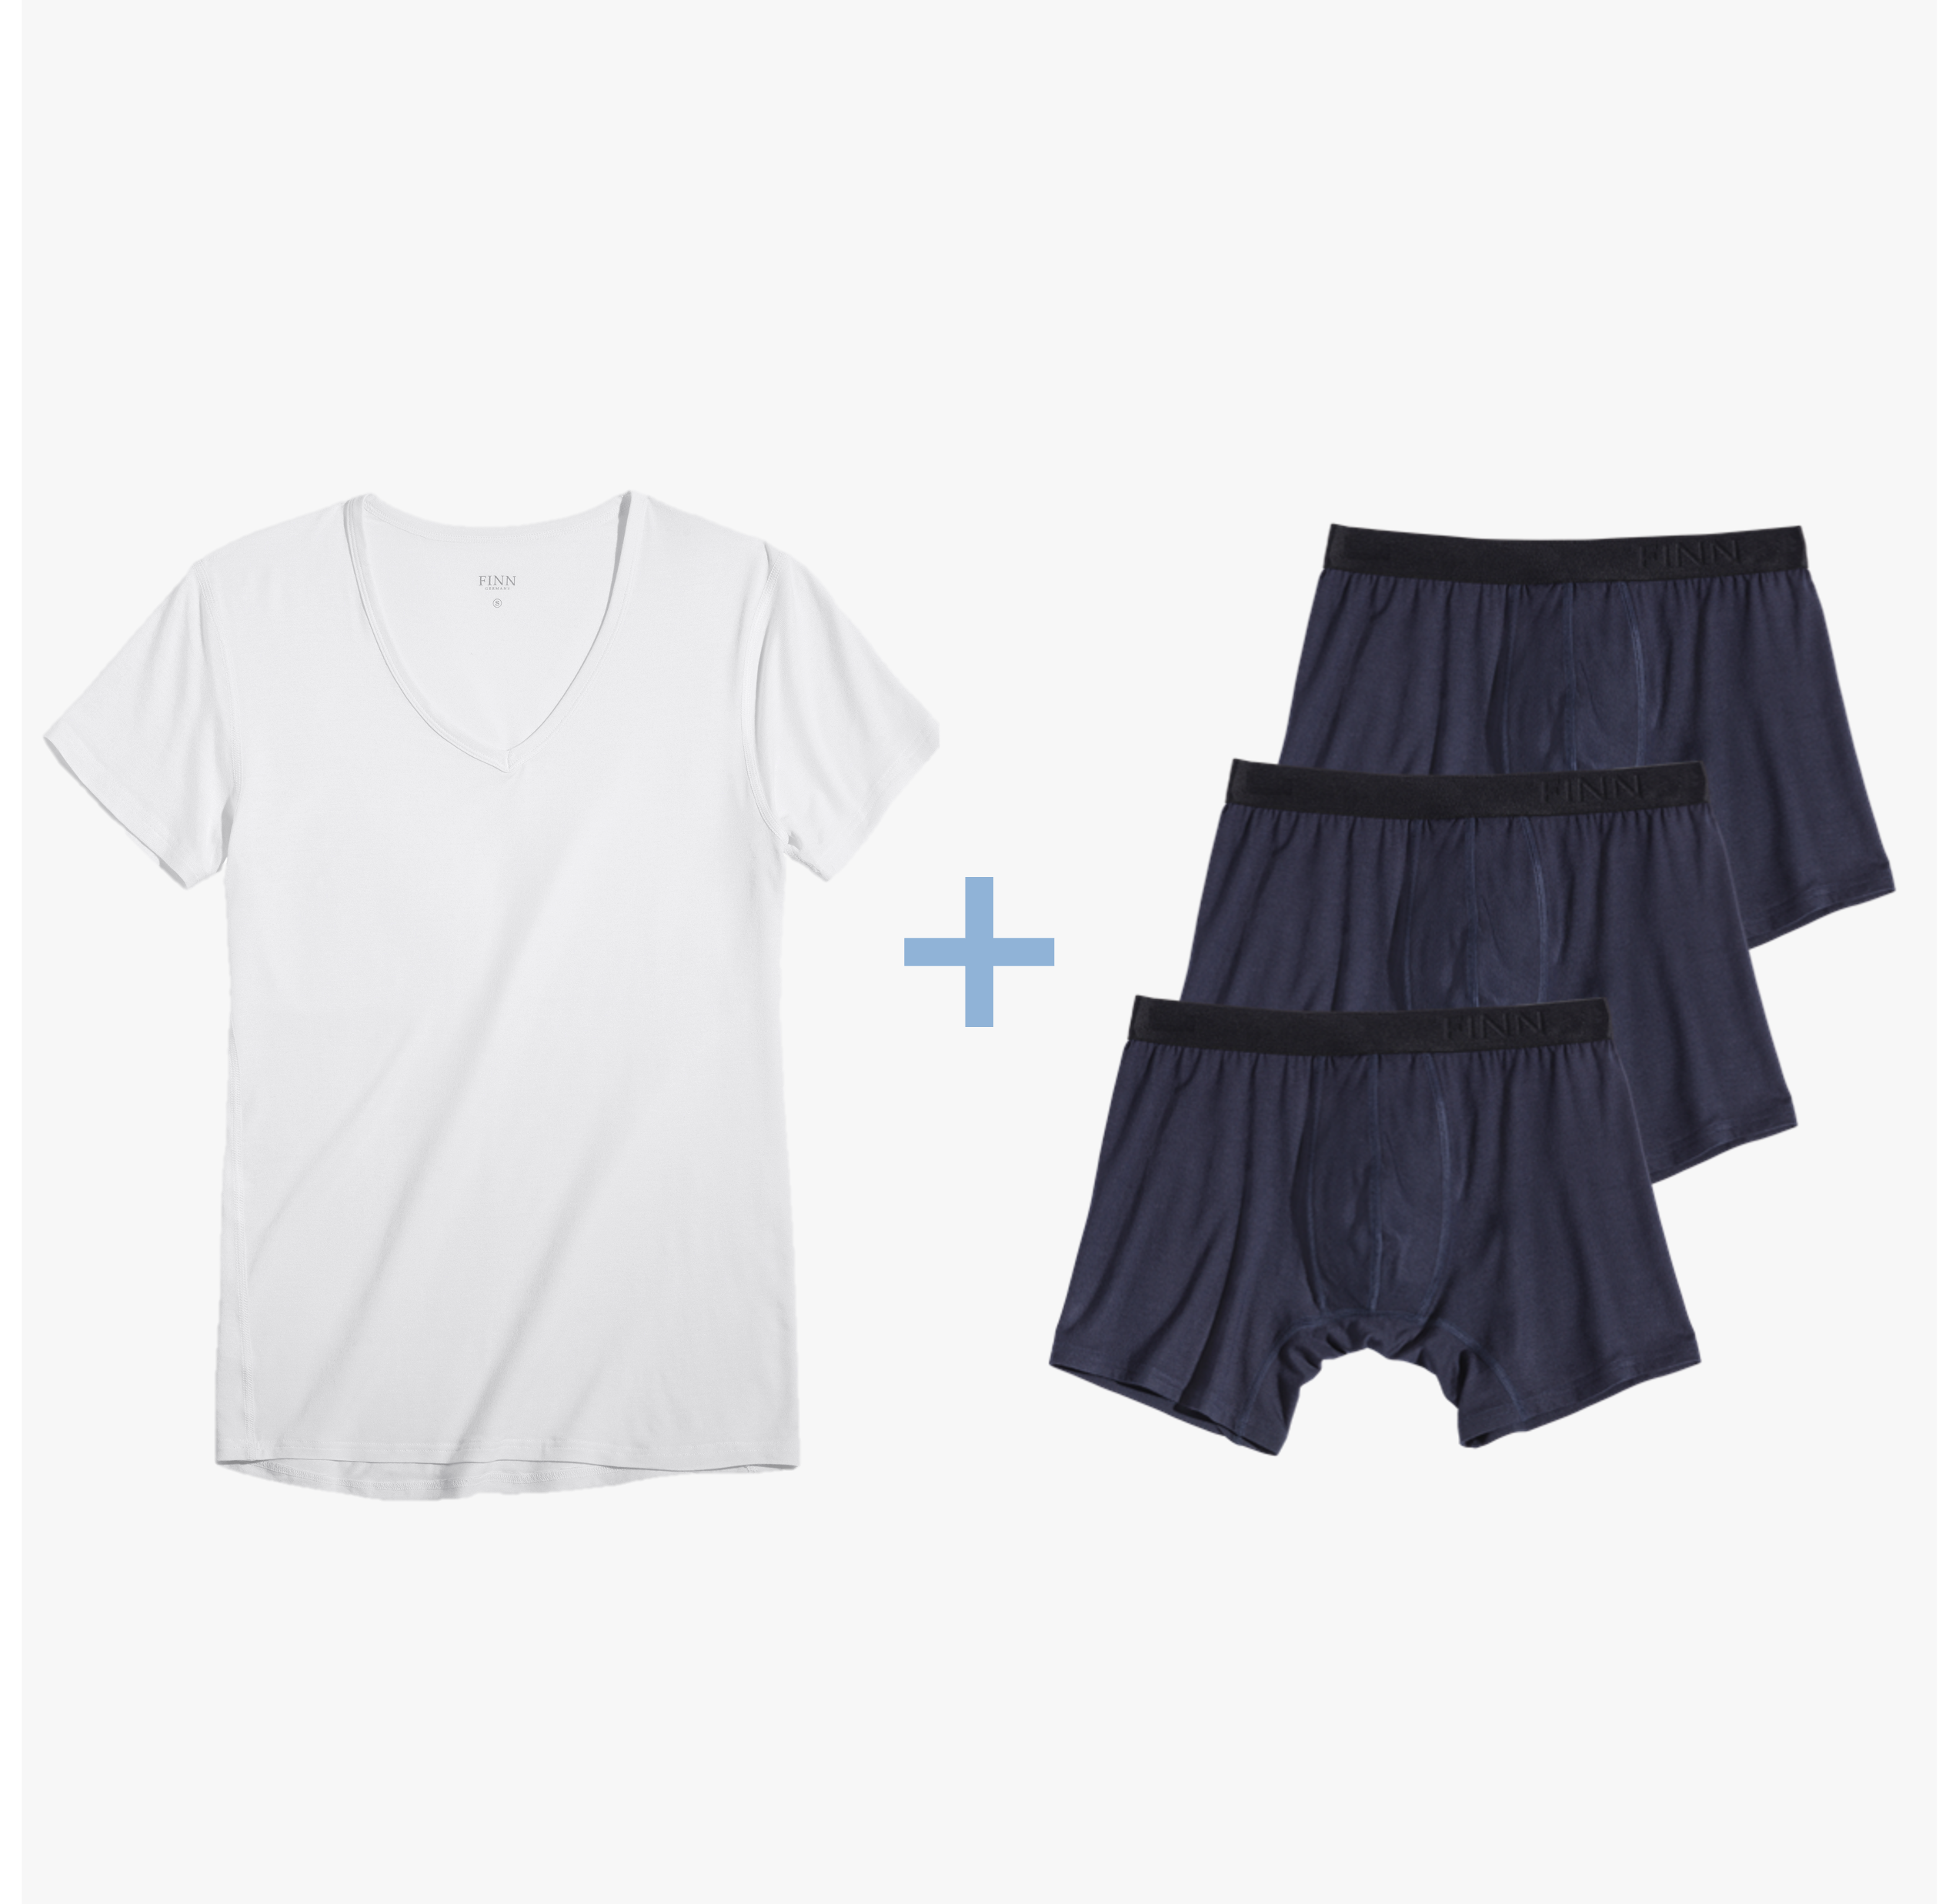 Weißes Unterhemd & 3 blaue Boxershorts im Bestseller Business-Unterwäsche Set. Bundle-Set mit Micro-Modal Stoff für optimalen Tragekomfort.